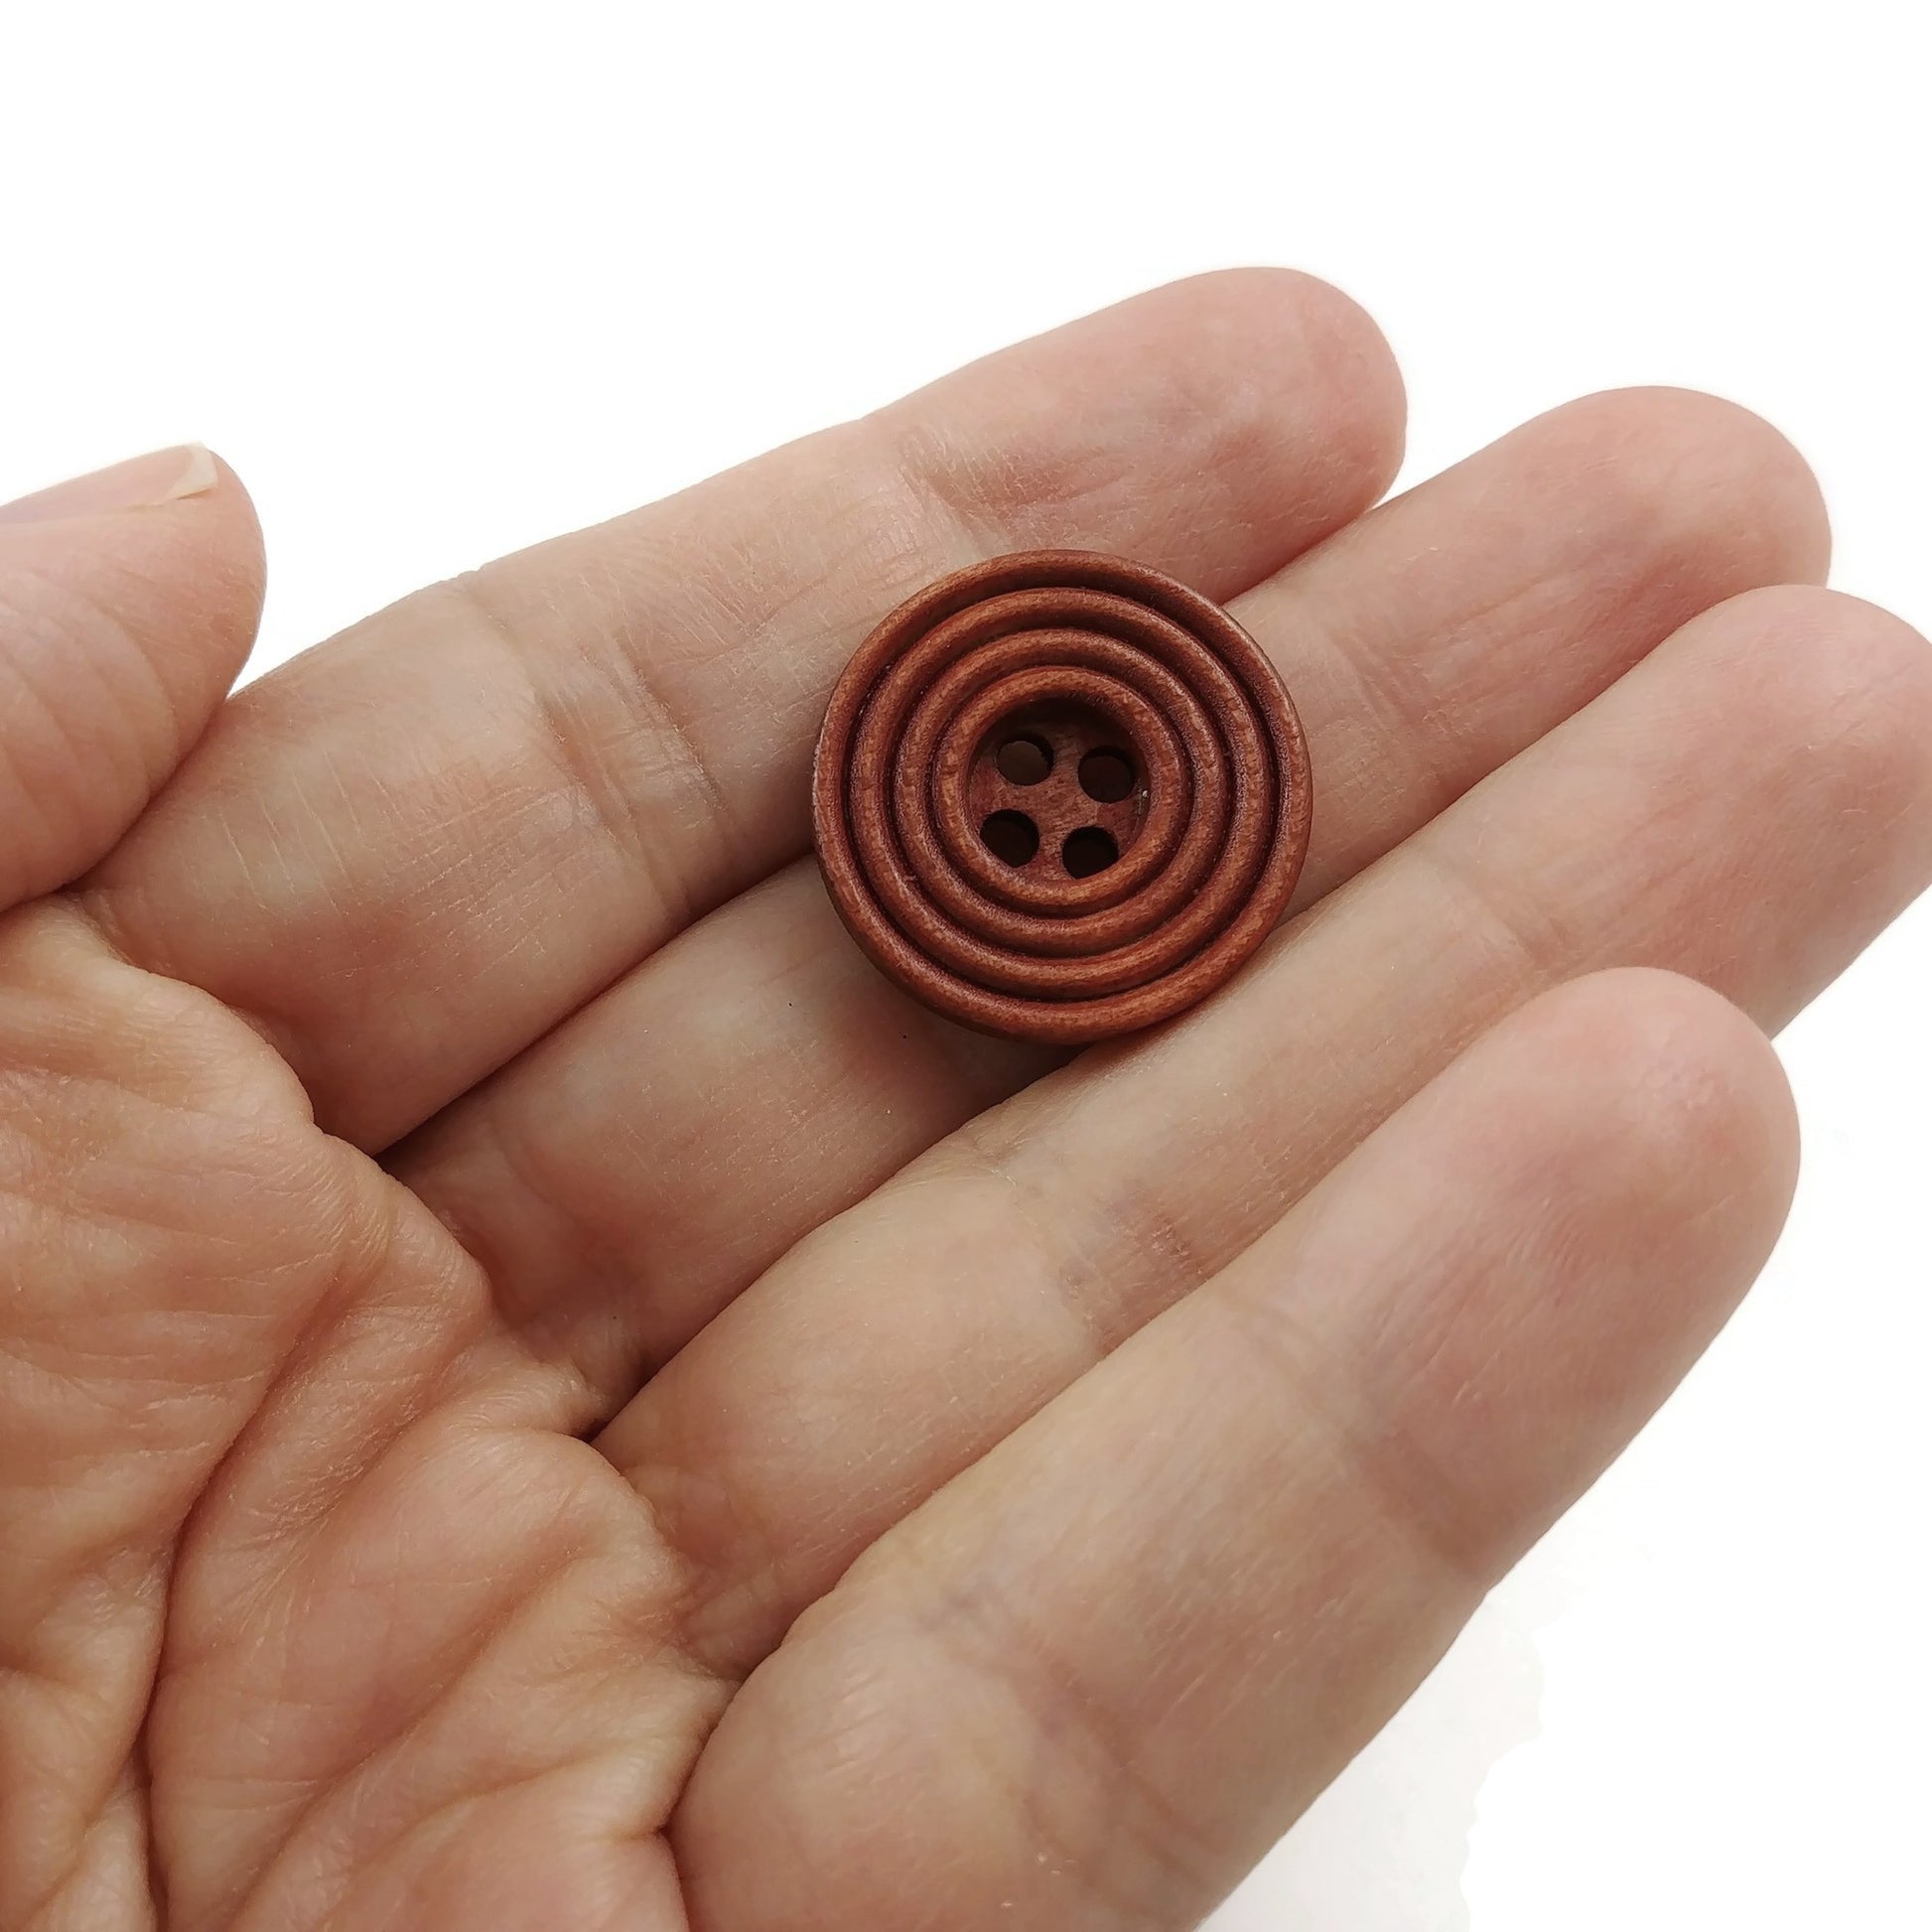 Bouton de bois café de 2cm - ensemble de 6 boutons en bois naturel avec cercles